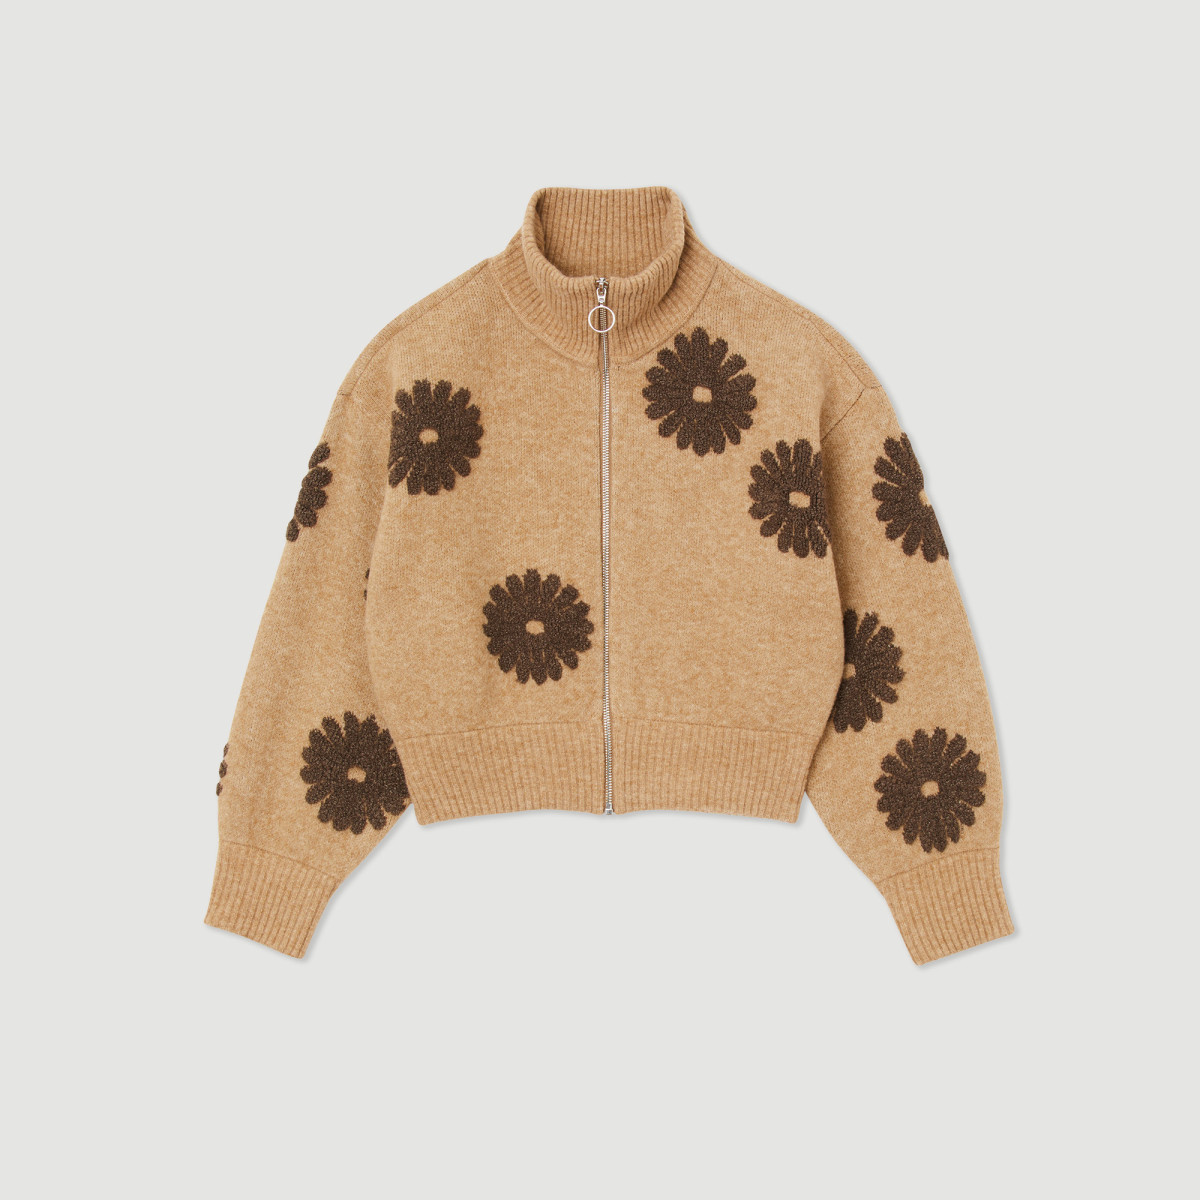 Sandro flower sweater